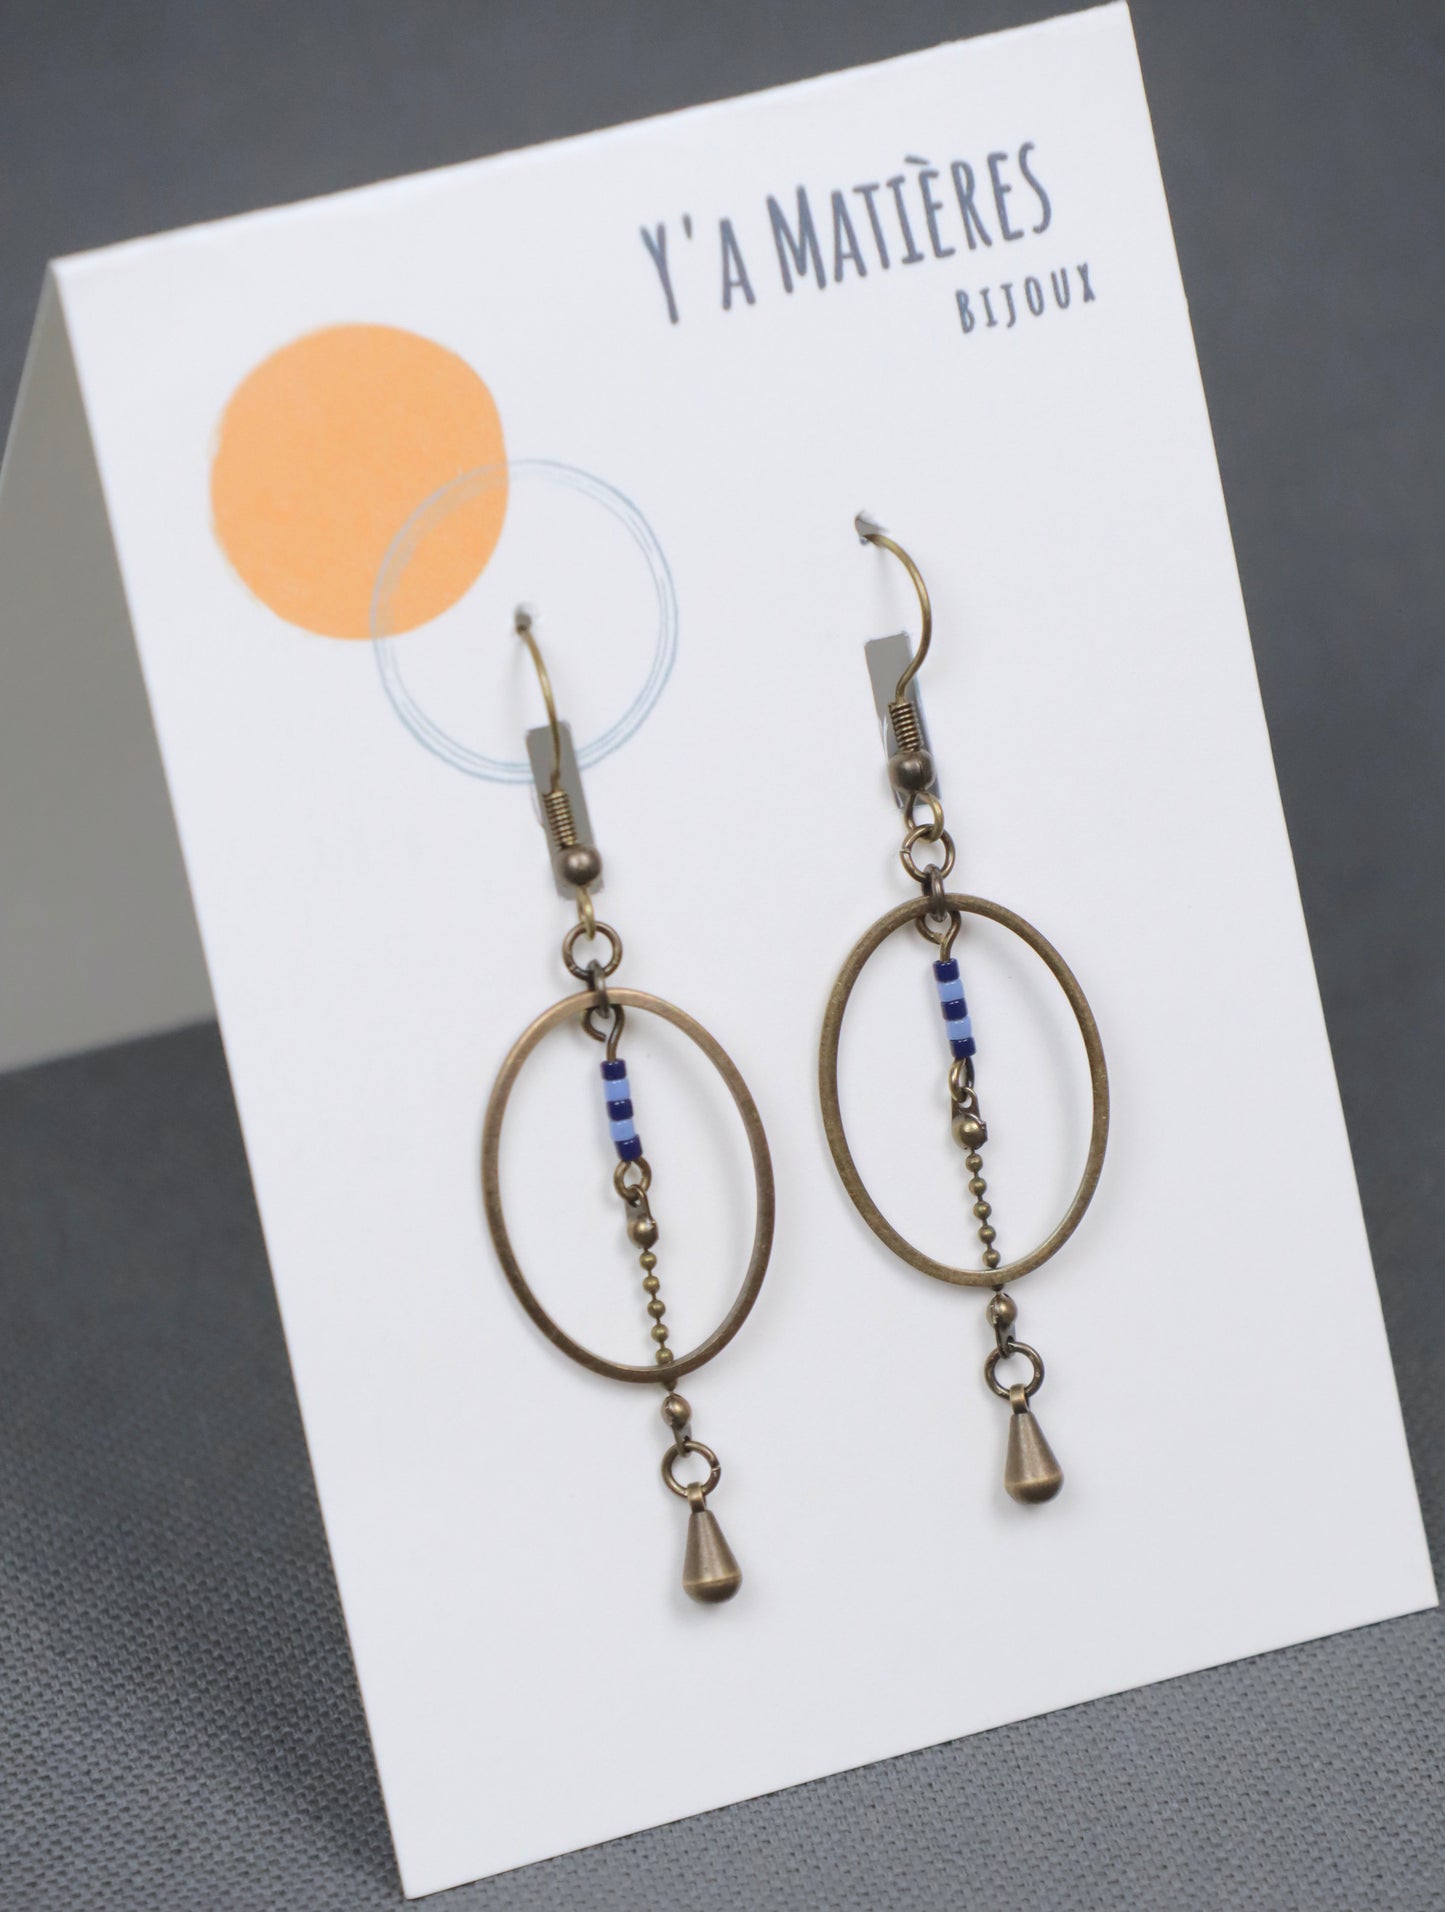 Gros plan des boucles d'oreilles pendantes, modèle Alana, ovales en laiton avec des perles bleues accrochées sur une carte avec le logo Y'a Matières